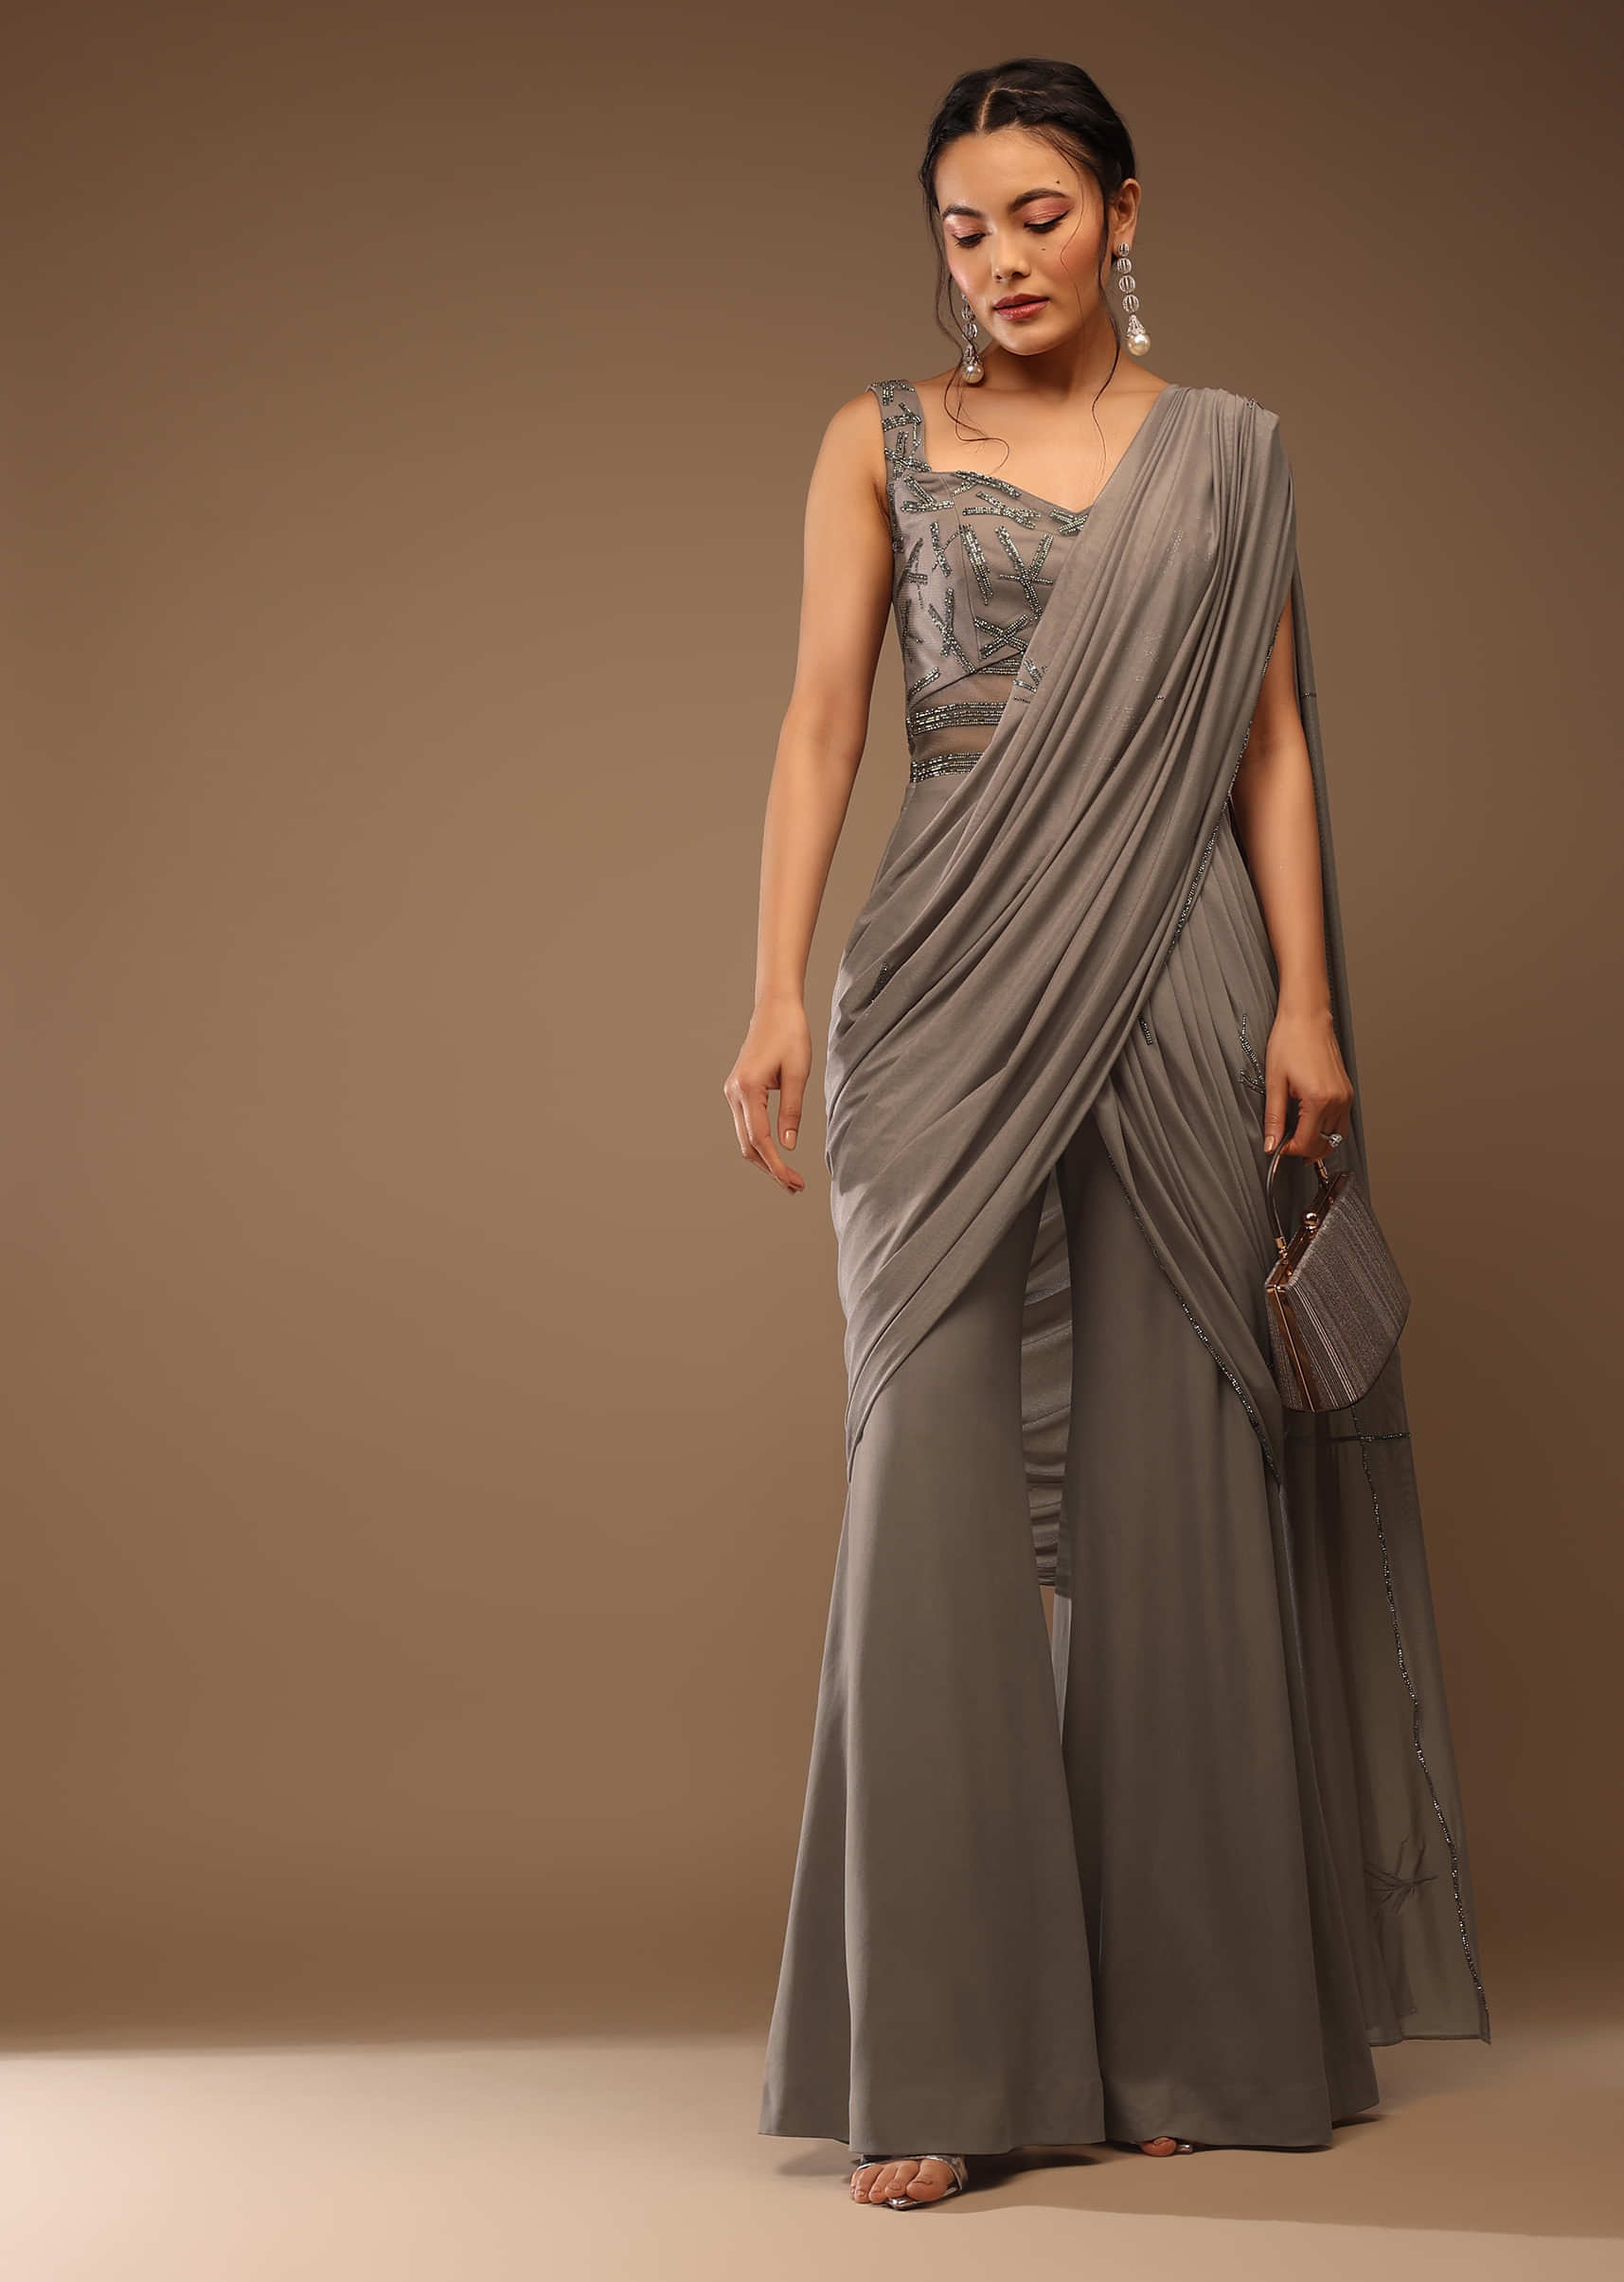 Tarun Tahiliani : Designer Womenswear | Menswear – Tarun Tahiliani Official